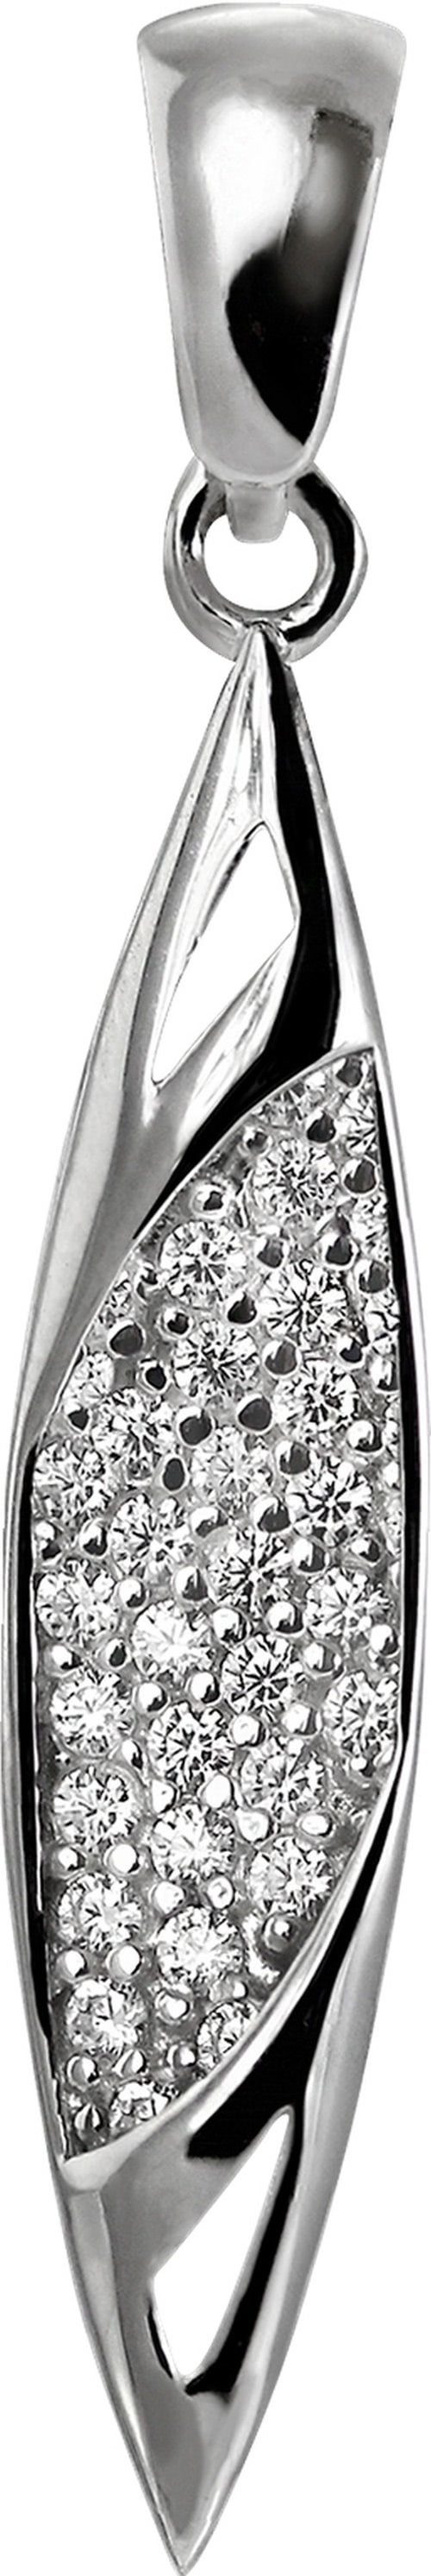 SilberDream Kettenanhänger SilberDream Damen Ship Ketten-Anhänger, Shipanhänger 925 Sterling Silber, silber, weiß | Kettenanhänger